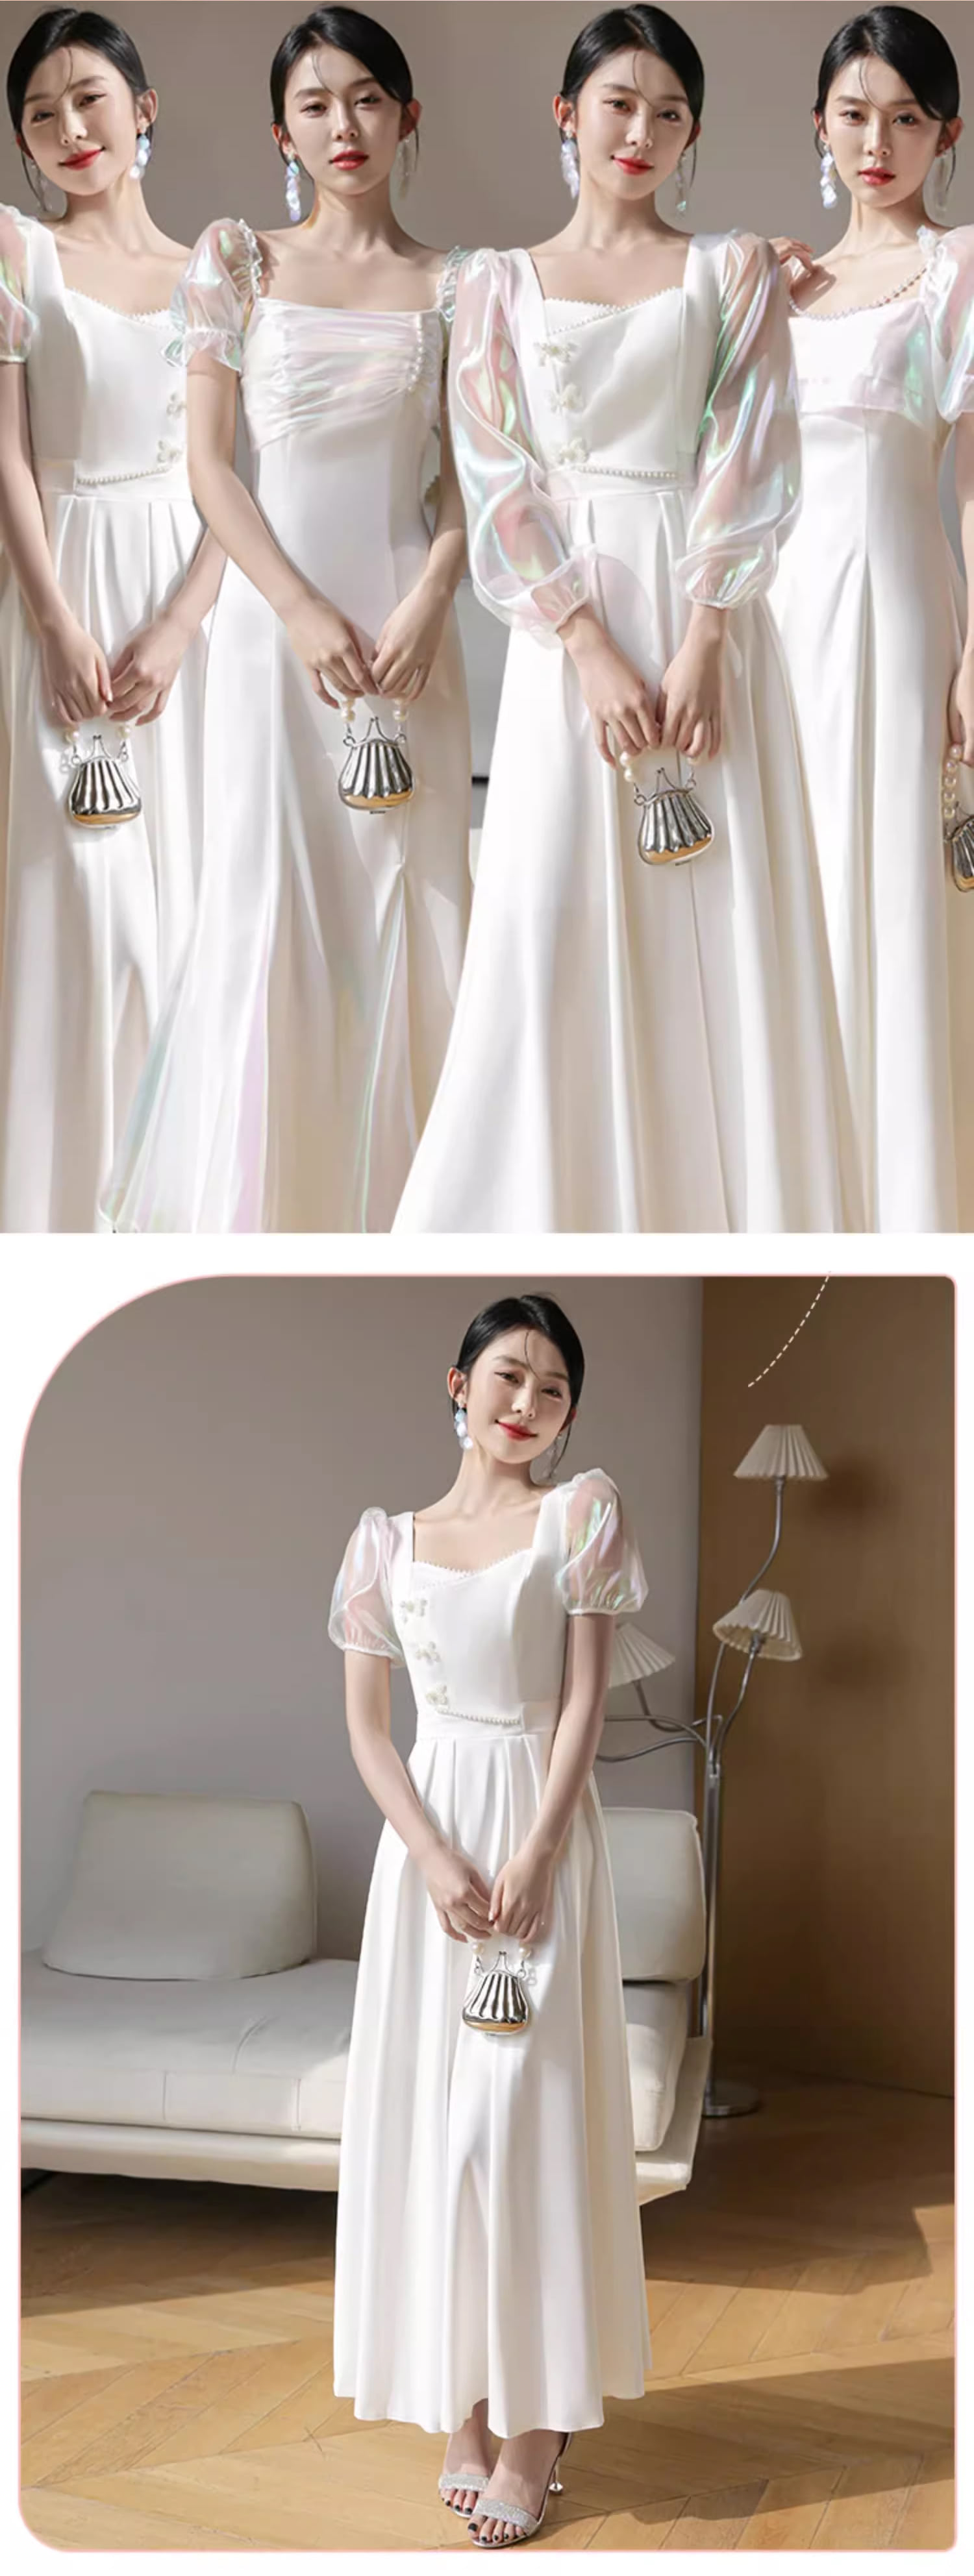 Unique-White-Wedding-Bridal-Party-Attire-Long-Dress-Evening-Gown11